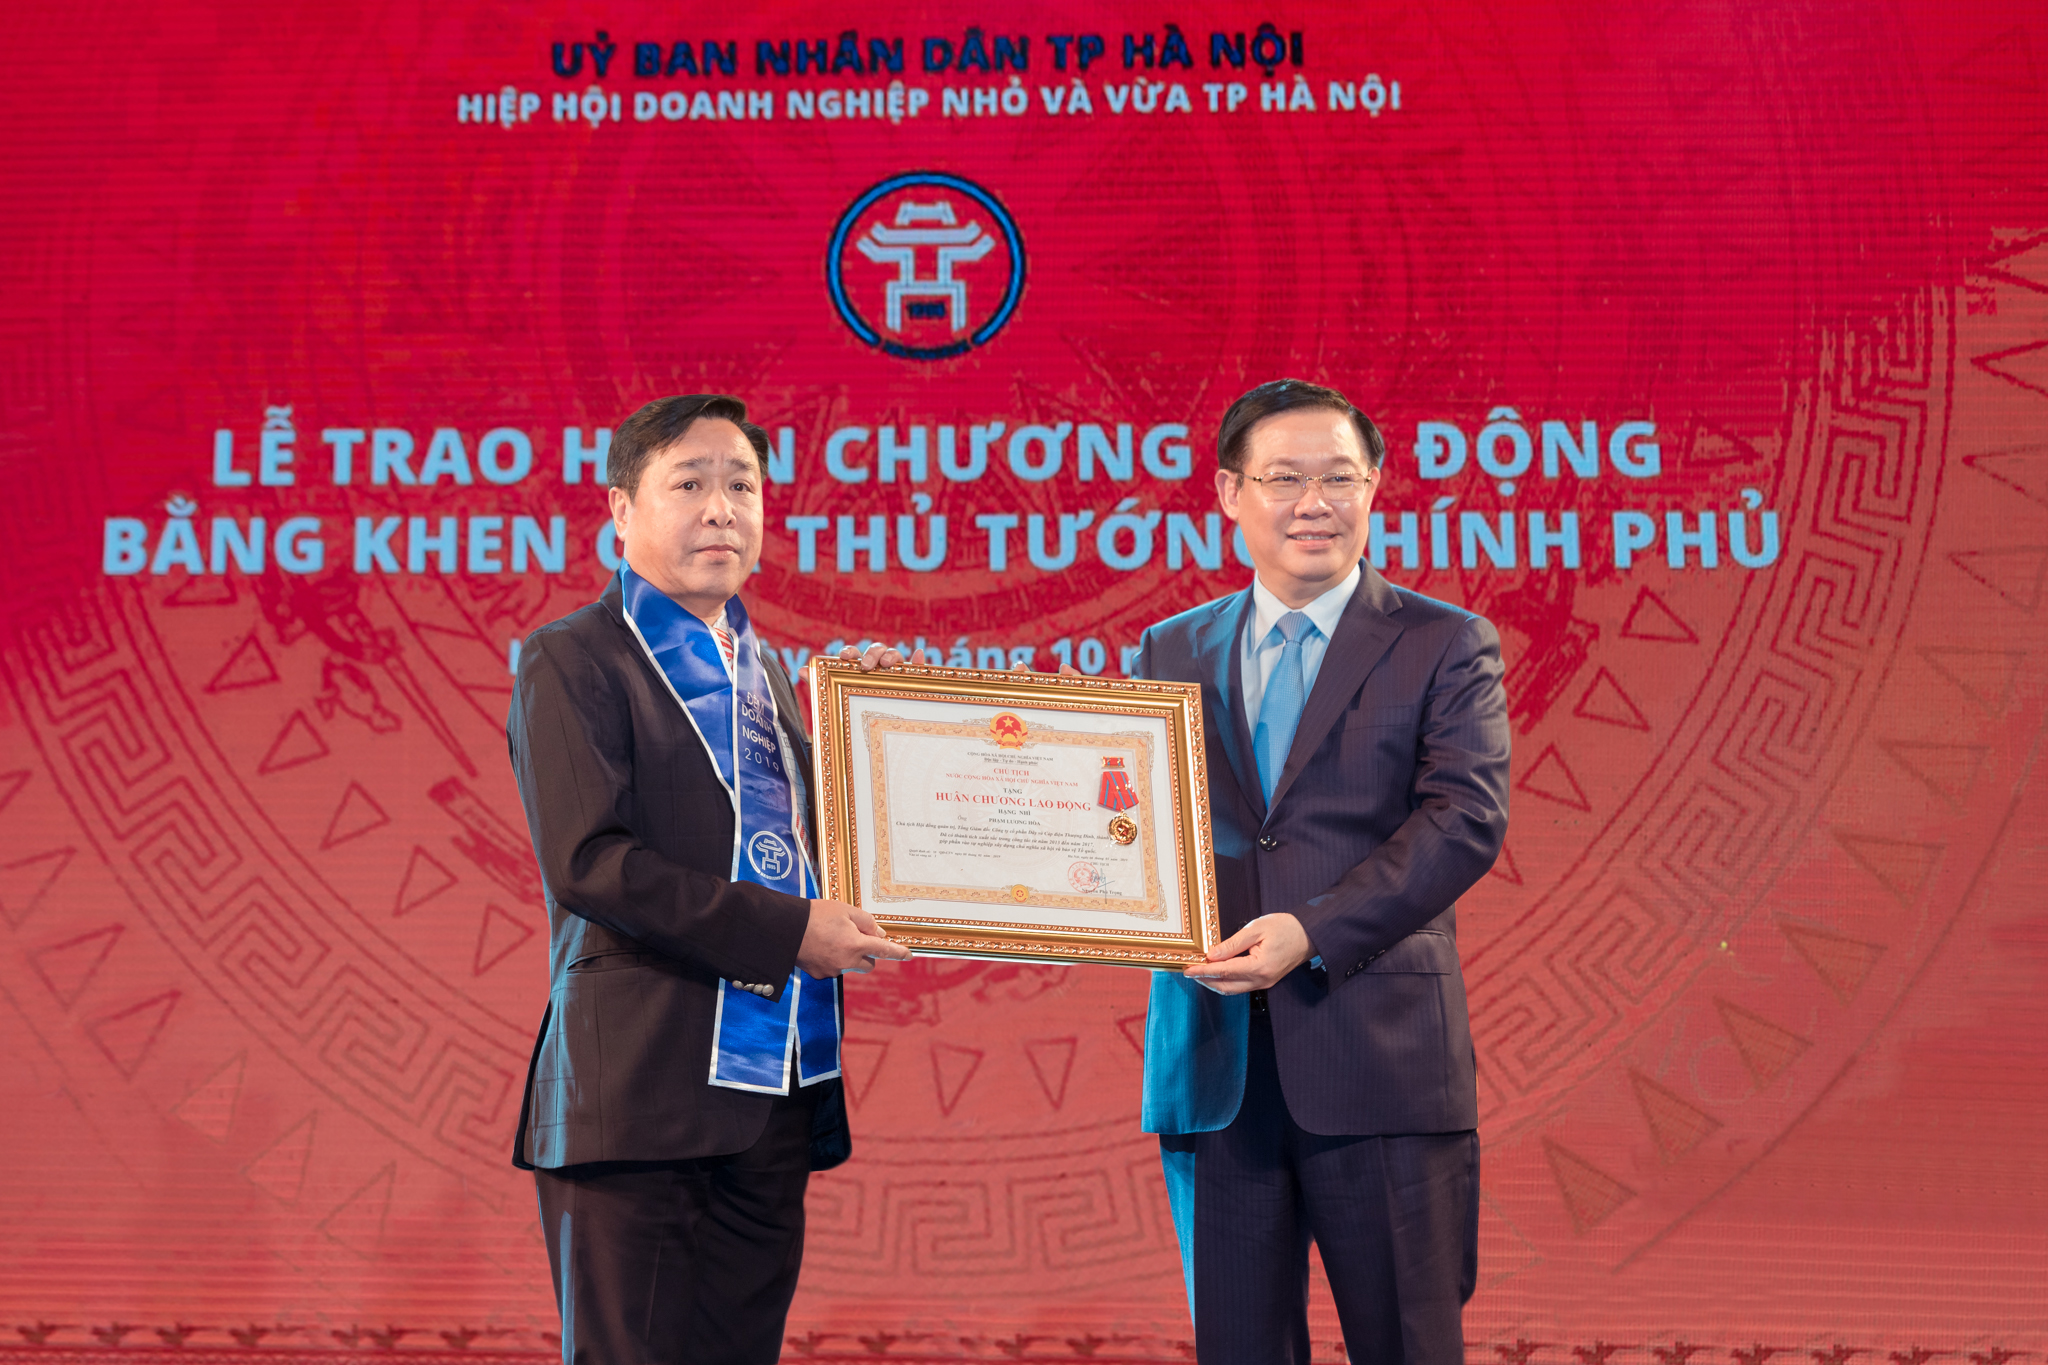 Năm 2019 - Năm thành công của doaonNăm 2019 đã chính thức khép lại với những con số tăng trưởng ấn tượng của nền kinh tế,trong đó có đóng góp không nhỏ của các tổ chức Hiệp hội và cộng đồng doanh nhân.h nhân Việt